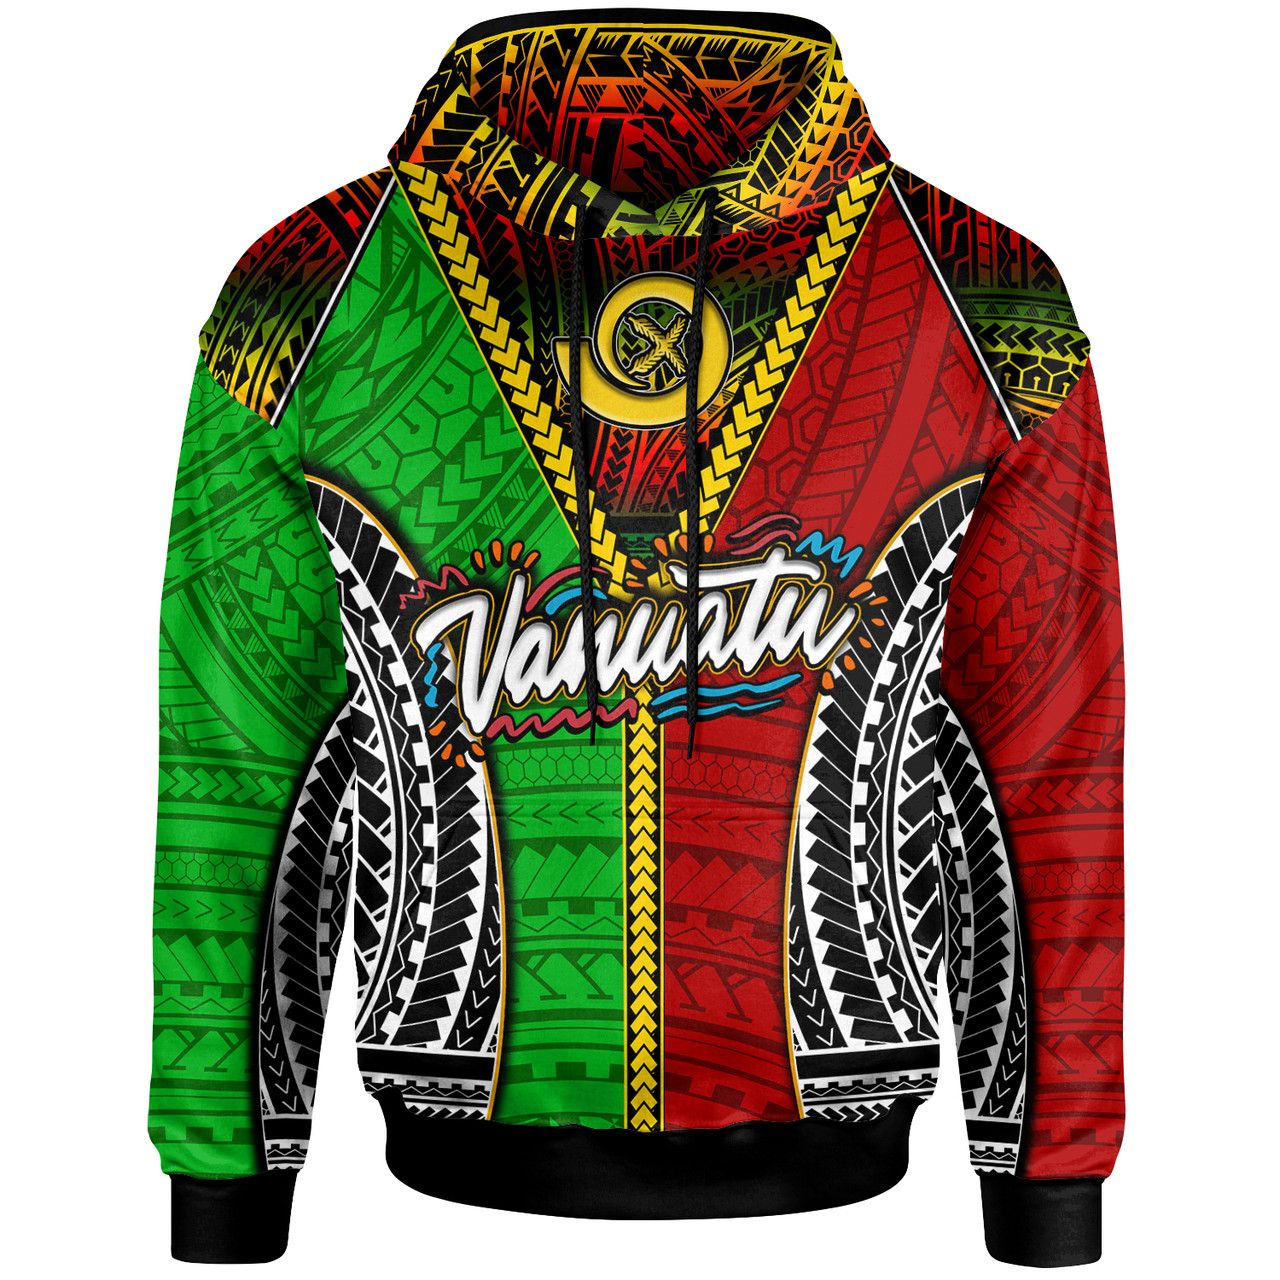 Vanuatu Hoodie - Custom Vanuatu Independence Anniversary With Polynesian Patterns Hoodie